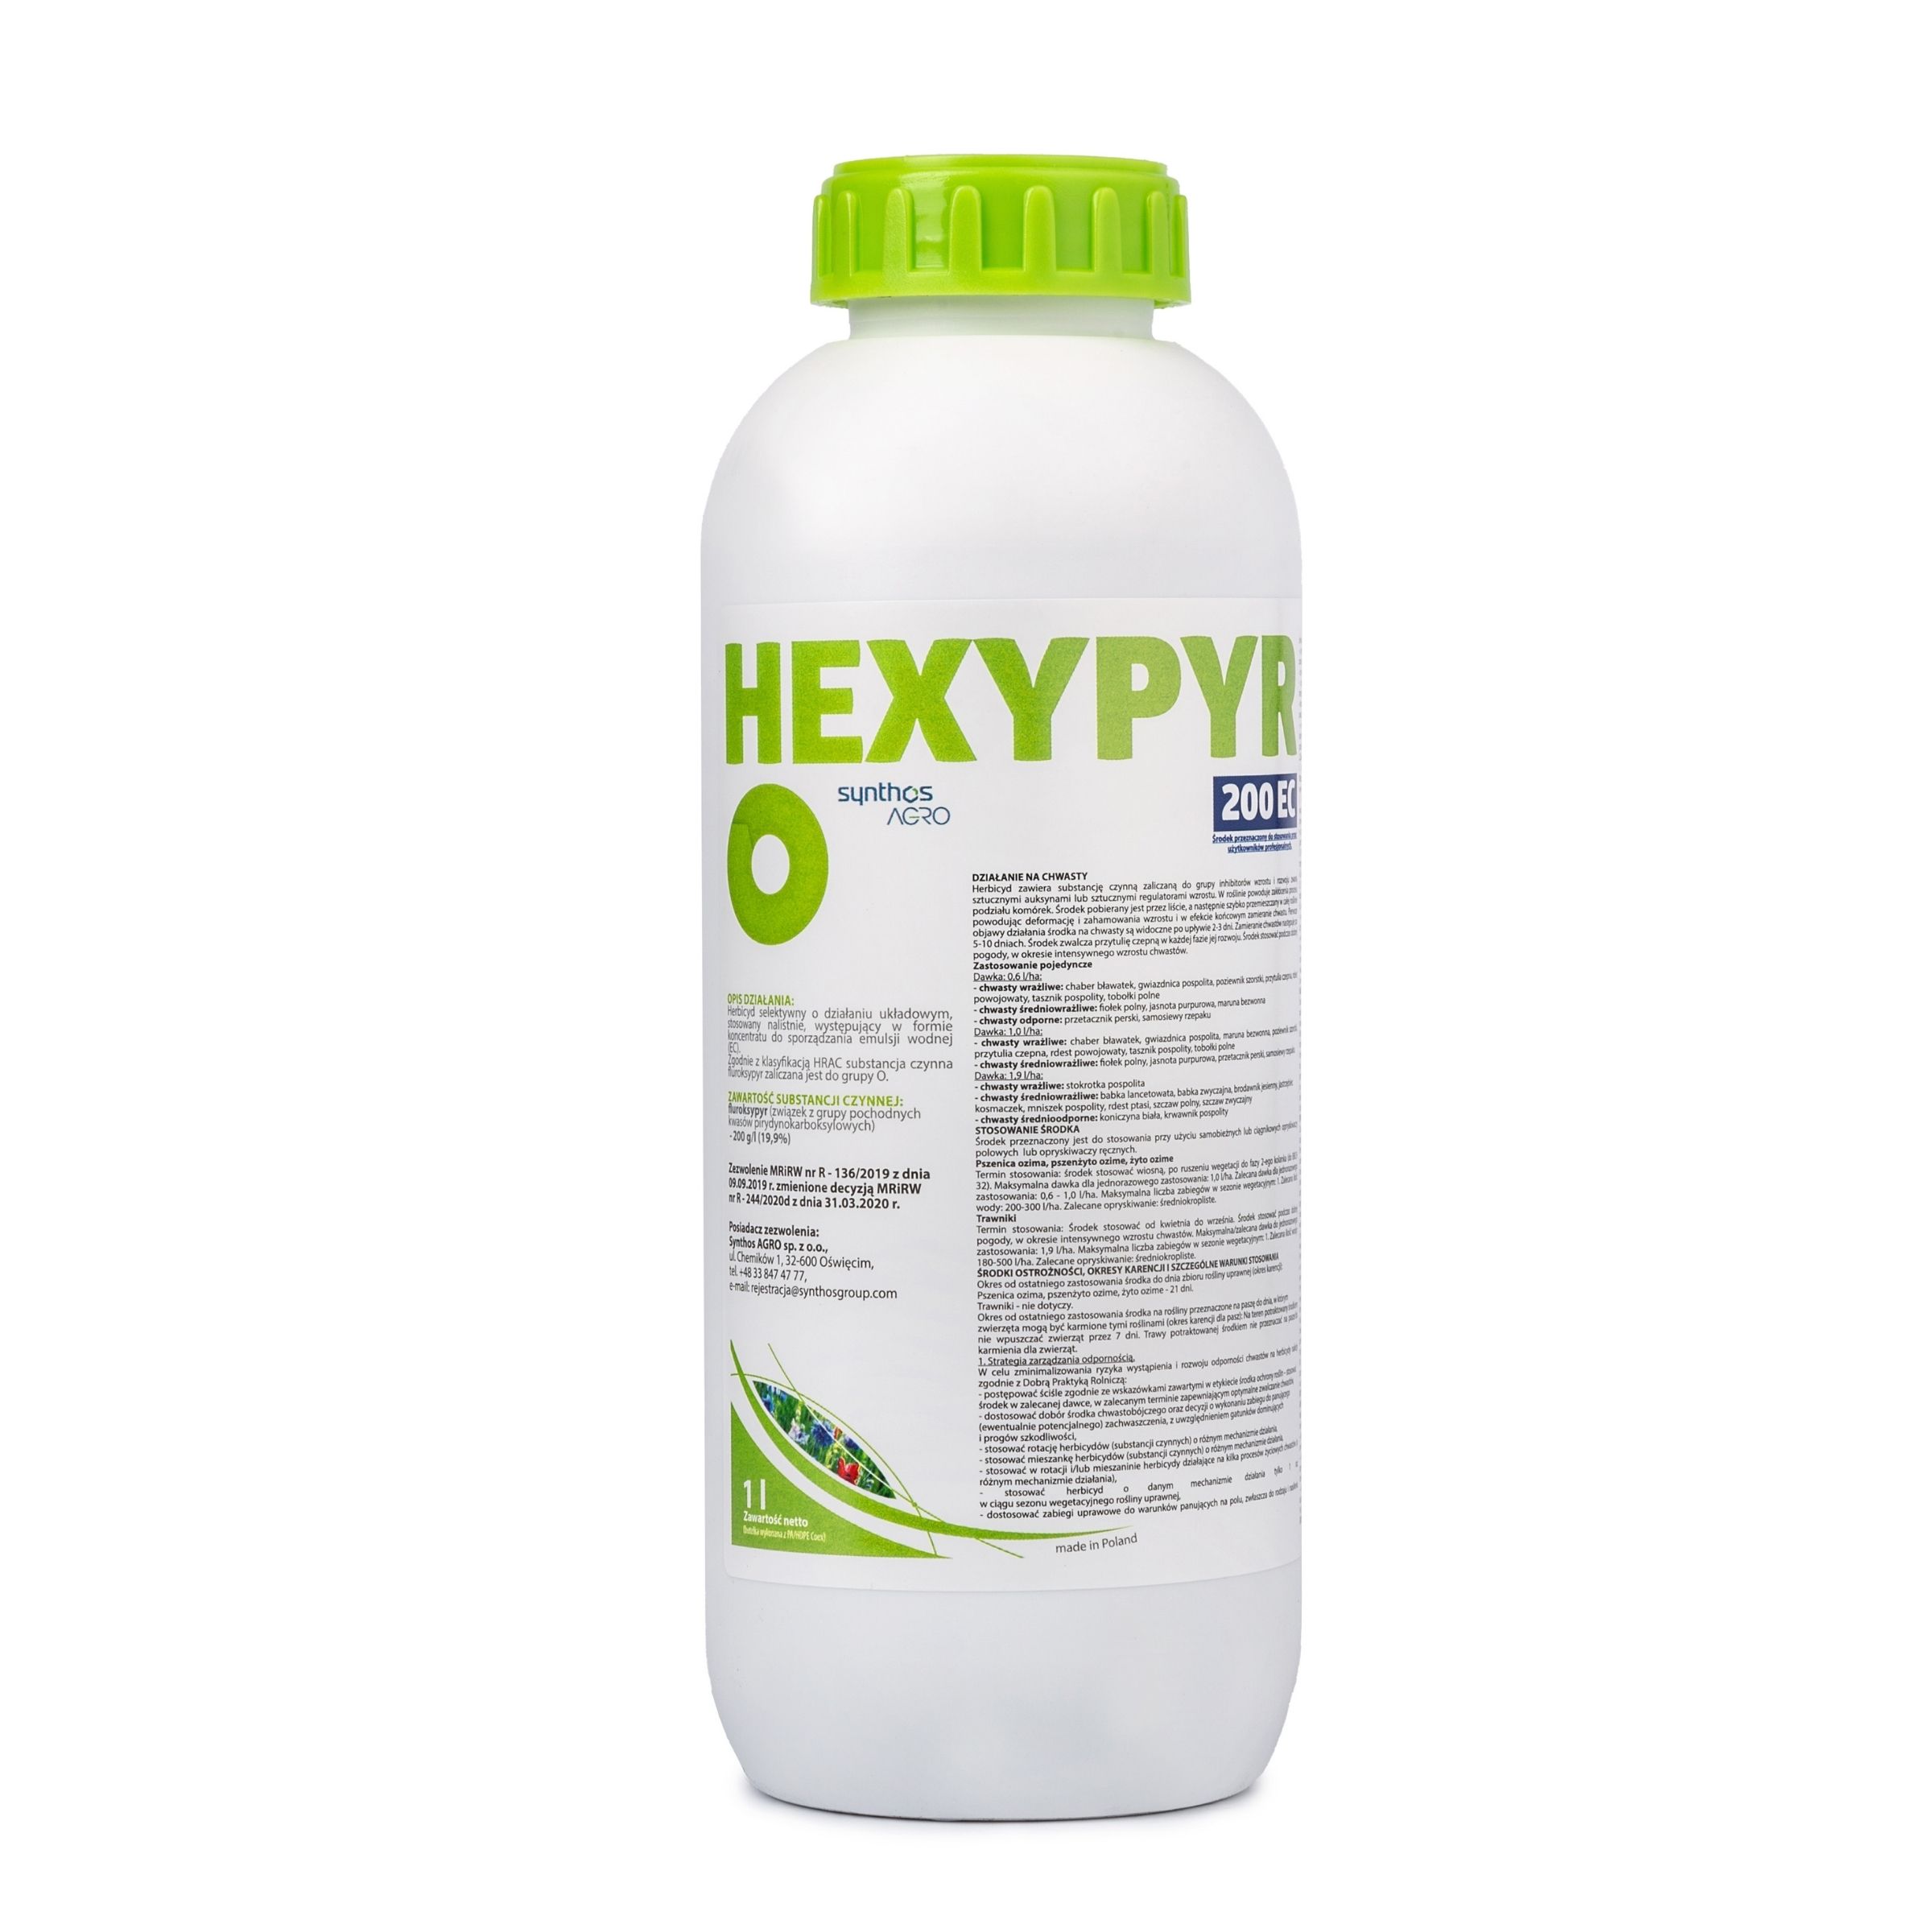 Hexypyr-200-ec-1l.jpg